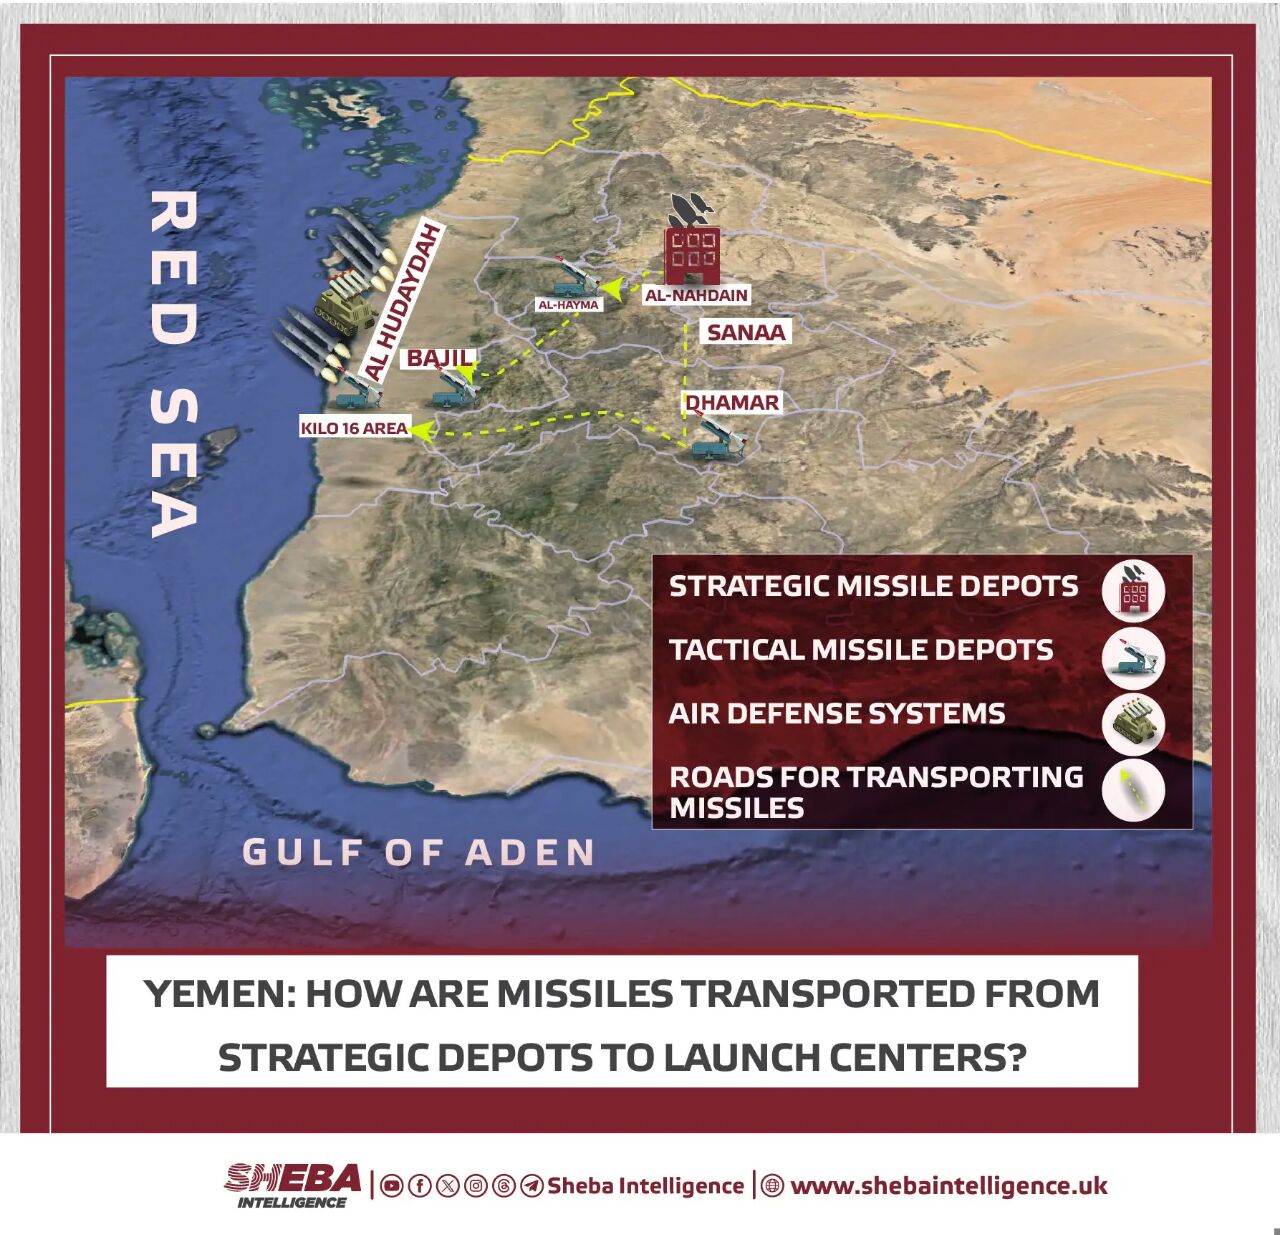 الكشف عن الطريقة التي ينقل بها الحوثيون الصواريخ لشن هجمات في البحر الأحمر